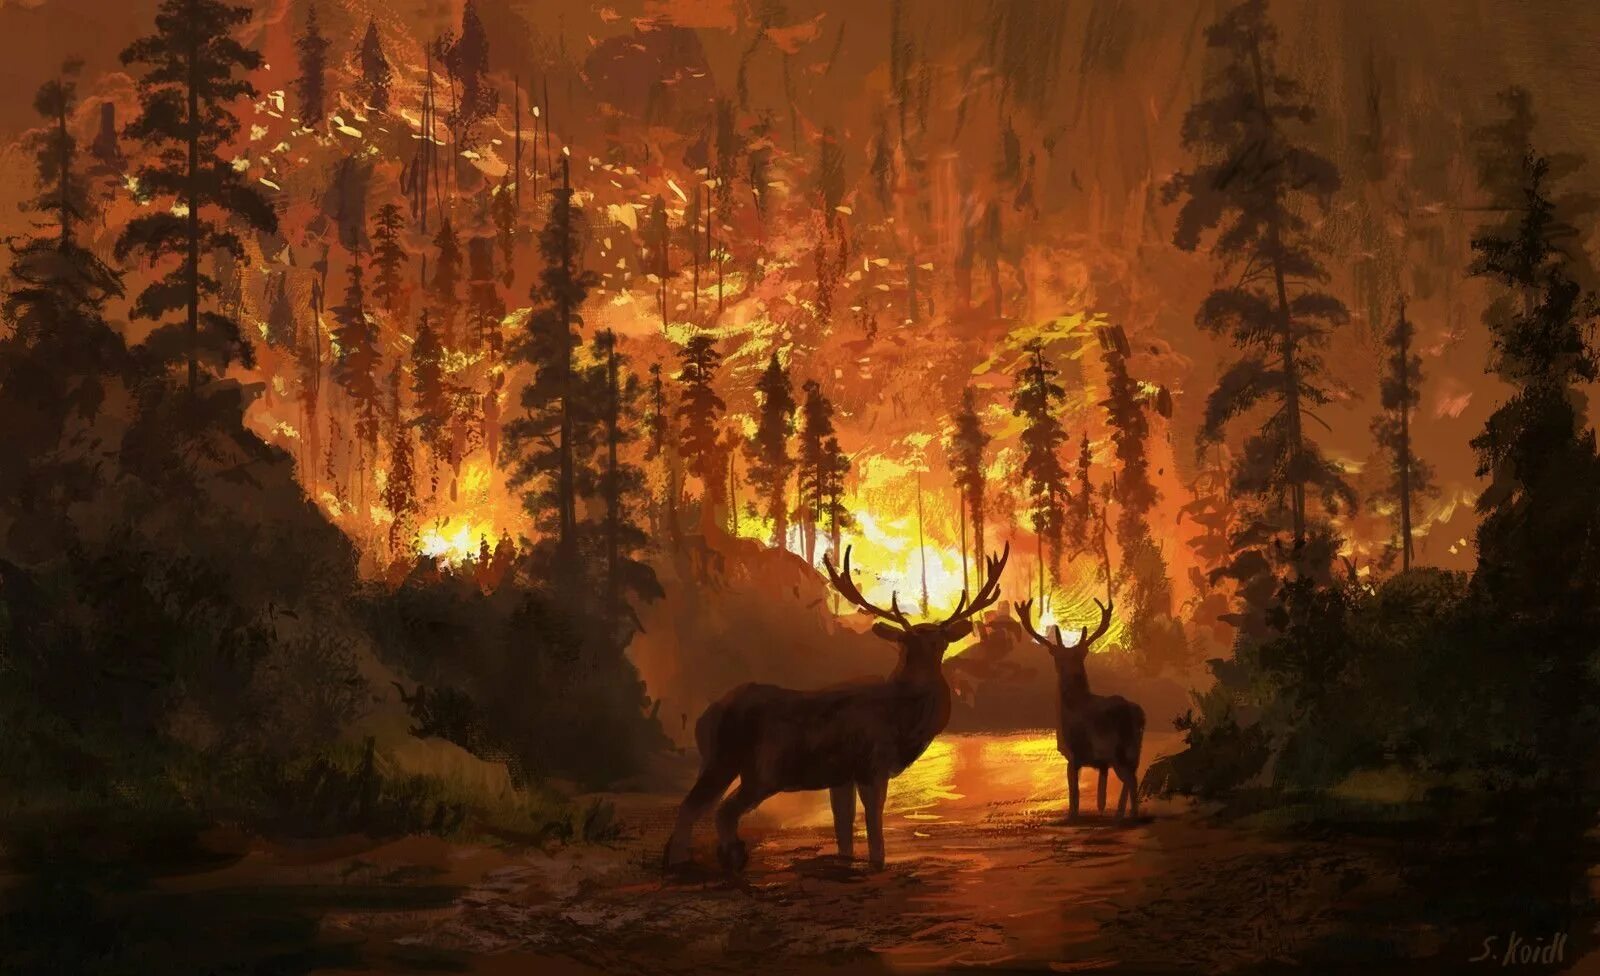 Горящий лес с животными. Пожар в лесу. Пожар в лесу и звери. Пожар в лесу арт. Лось горит